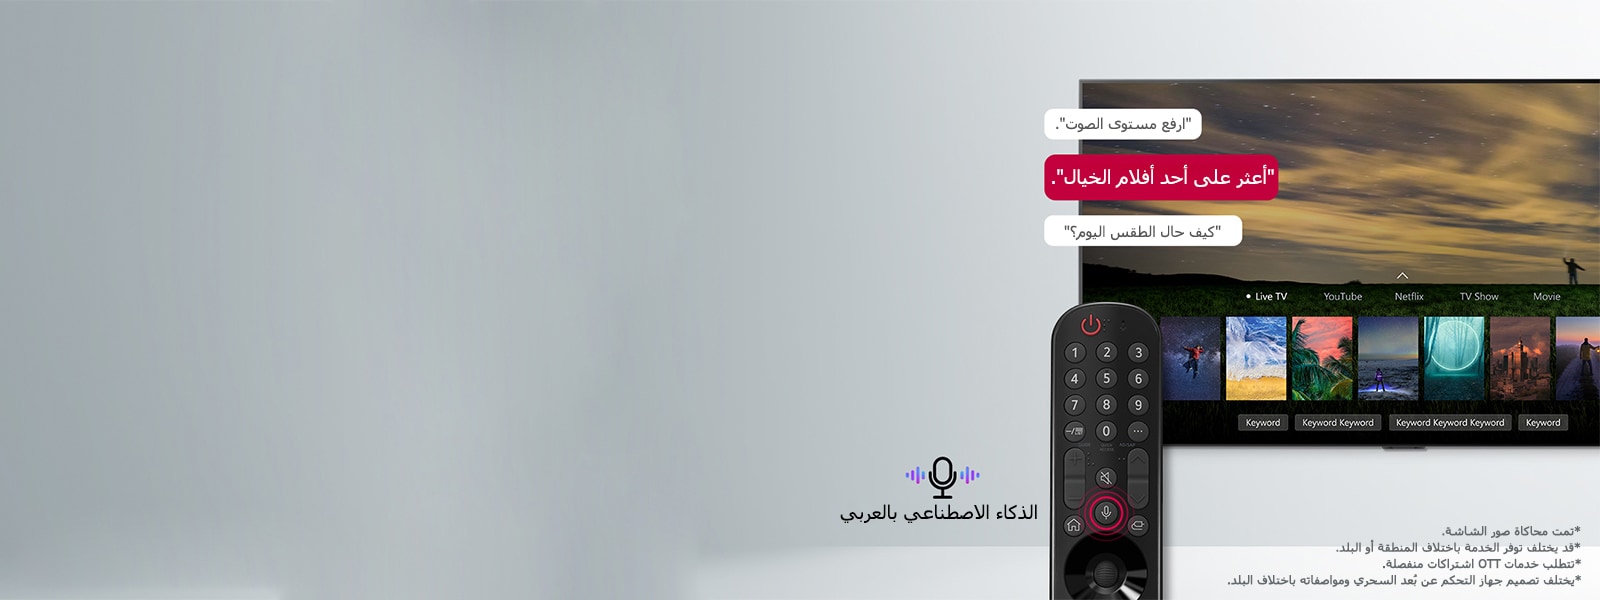 شاشة تلفزيون تعرض ملصقات دعائية لفيلم من أفلام الخيال ويتم تصفحها عن طريق التحكم عن بُعد من خلال الأوامر الصوتية باللغة العربية.